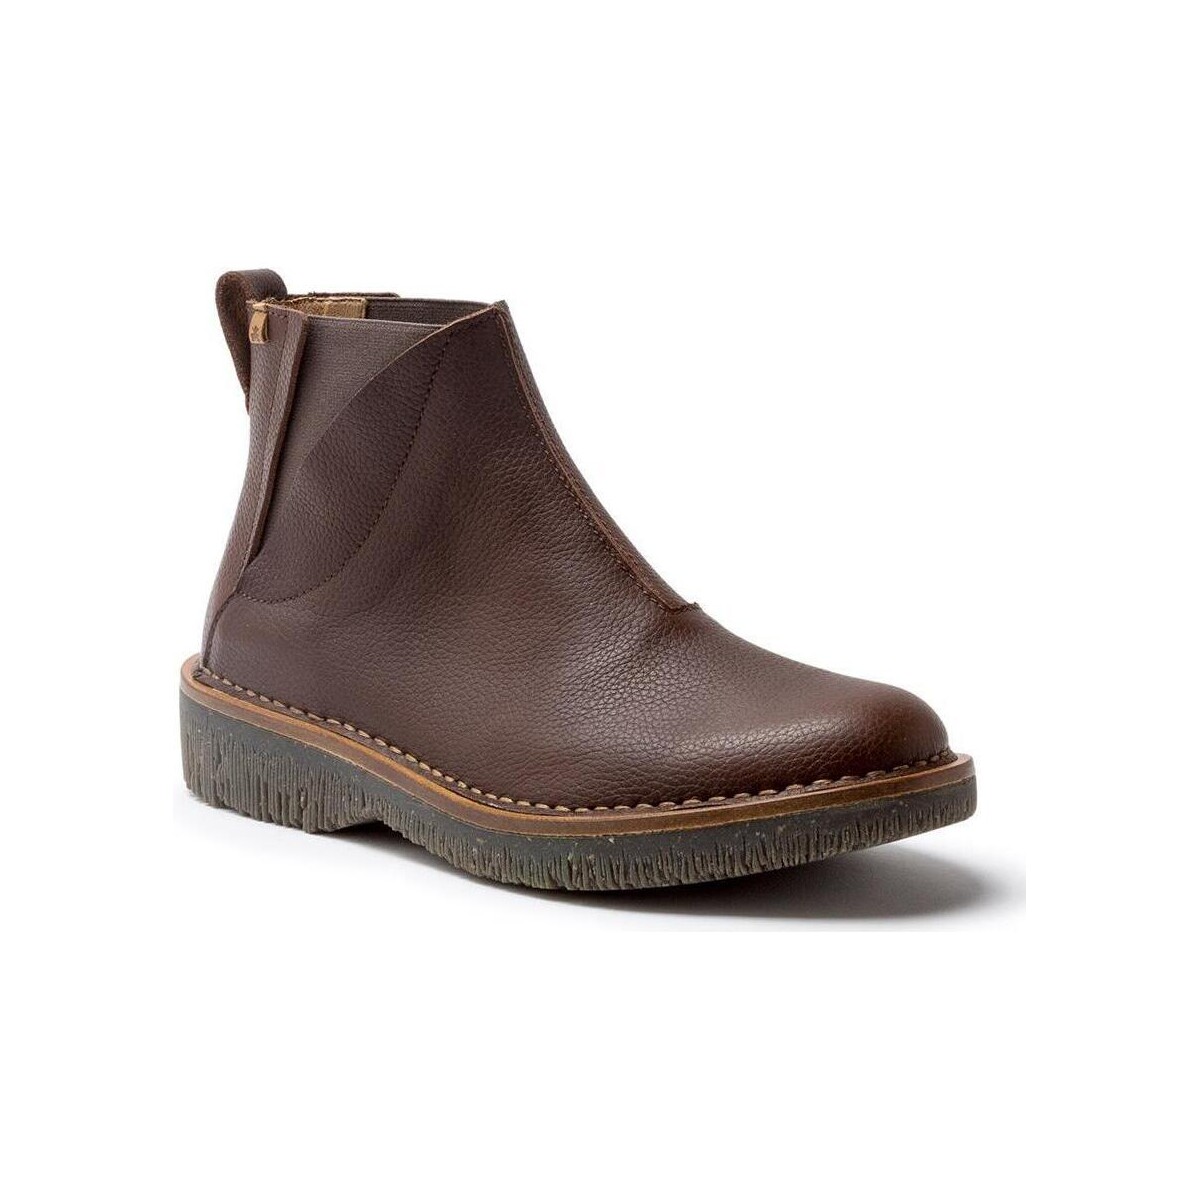 Schoenen Dames Low boots El Naturalista 255702120005 Bruin